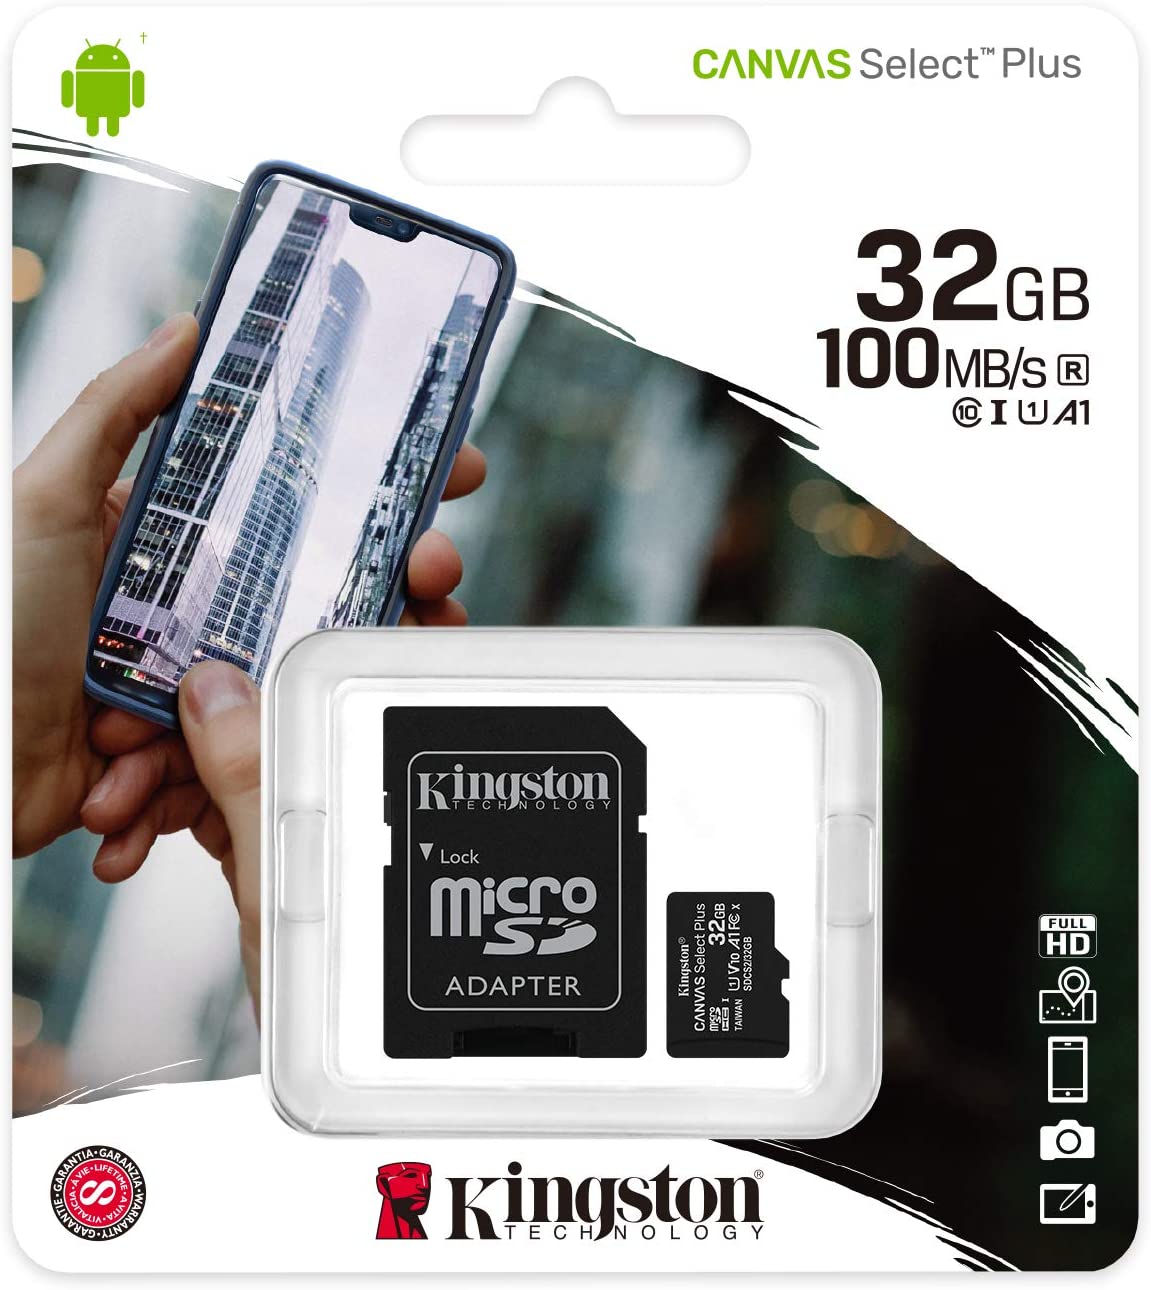 ALMACENAMIENTO MICROSD KINGSTON 32GB 100MB/S A1 CANVAS SELECT PLUS SDCS2/32GB